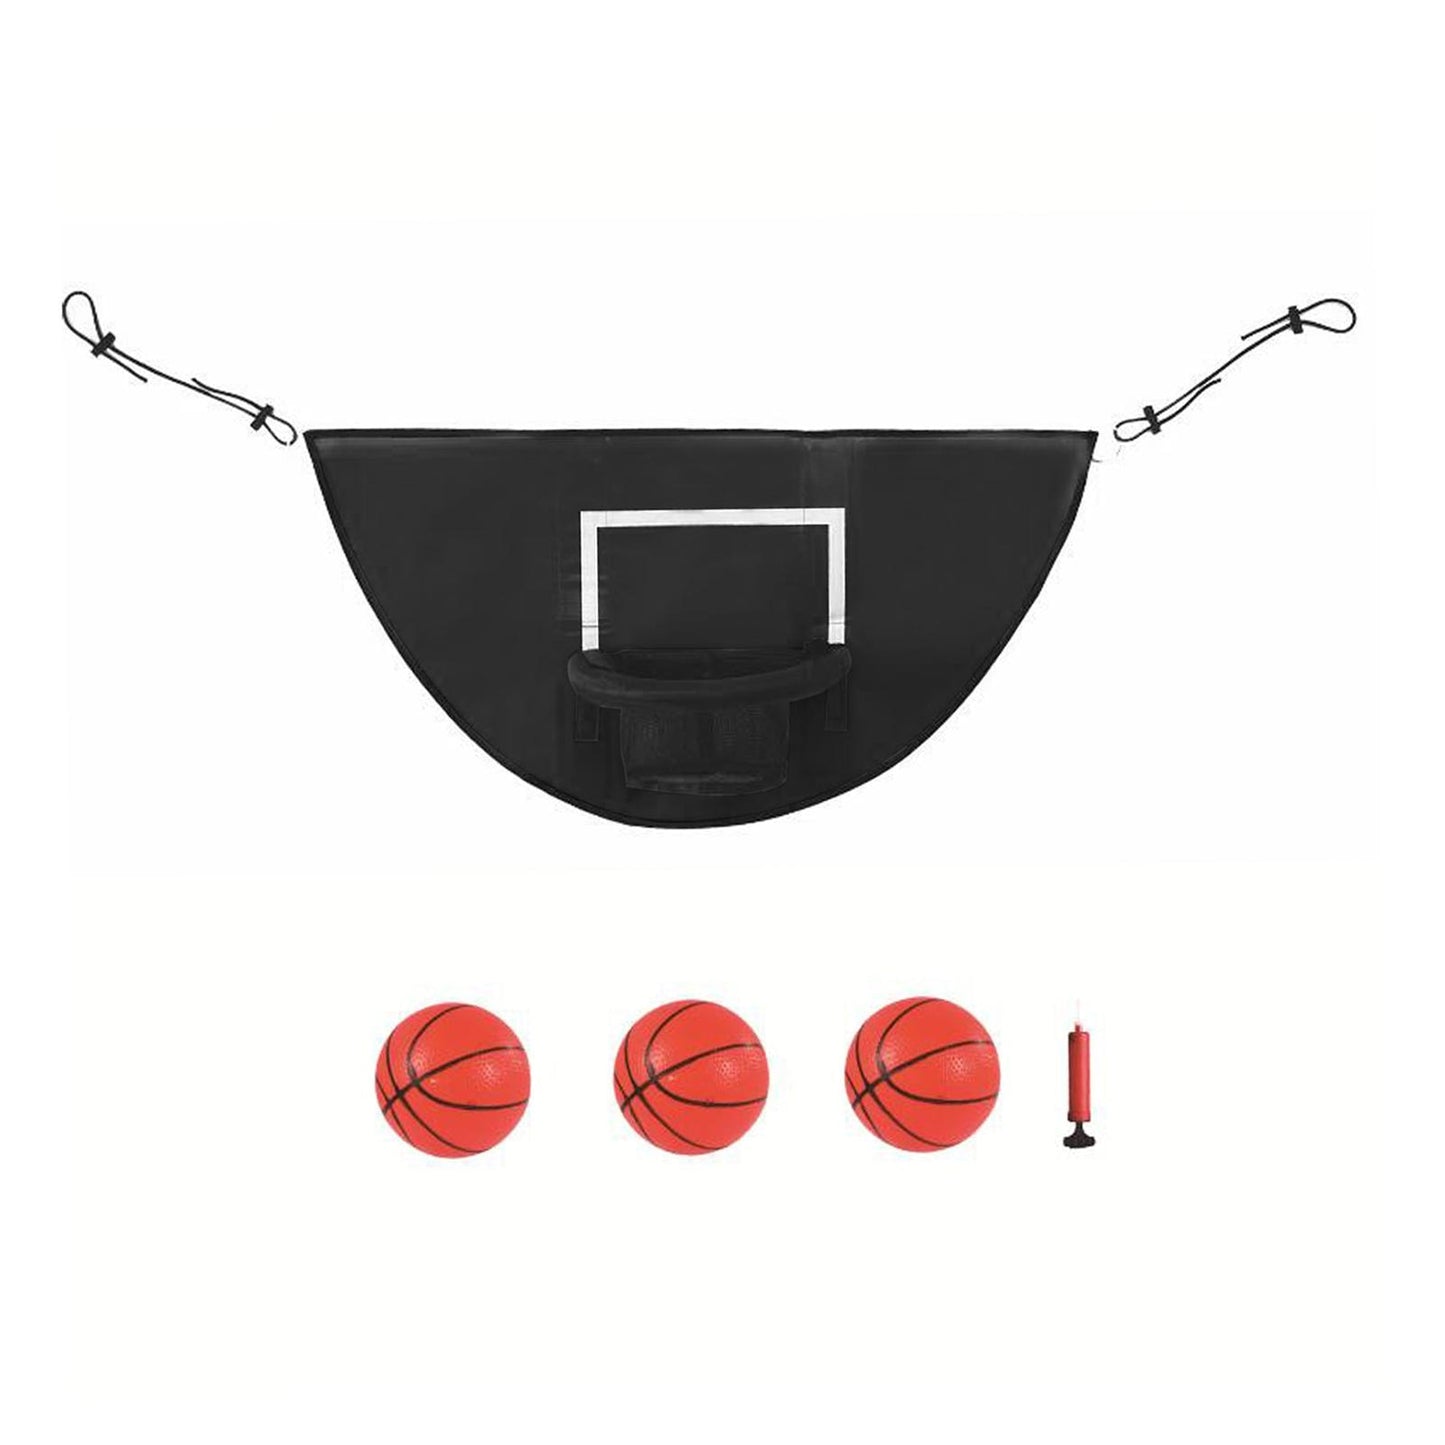 Panier de basket pour trampoline : Matériaux imperméables et résistants aux rayons du soleil, structure de basket-ball